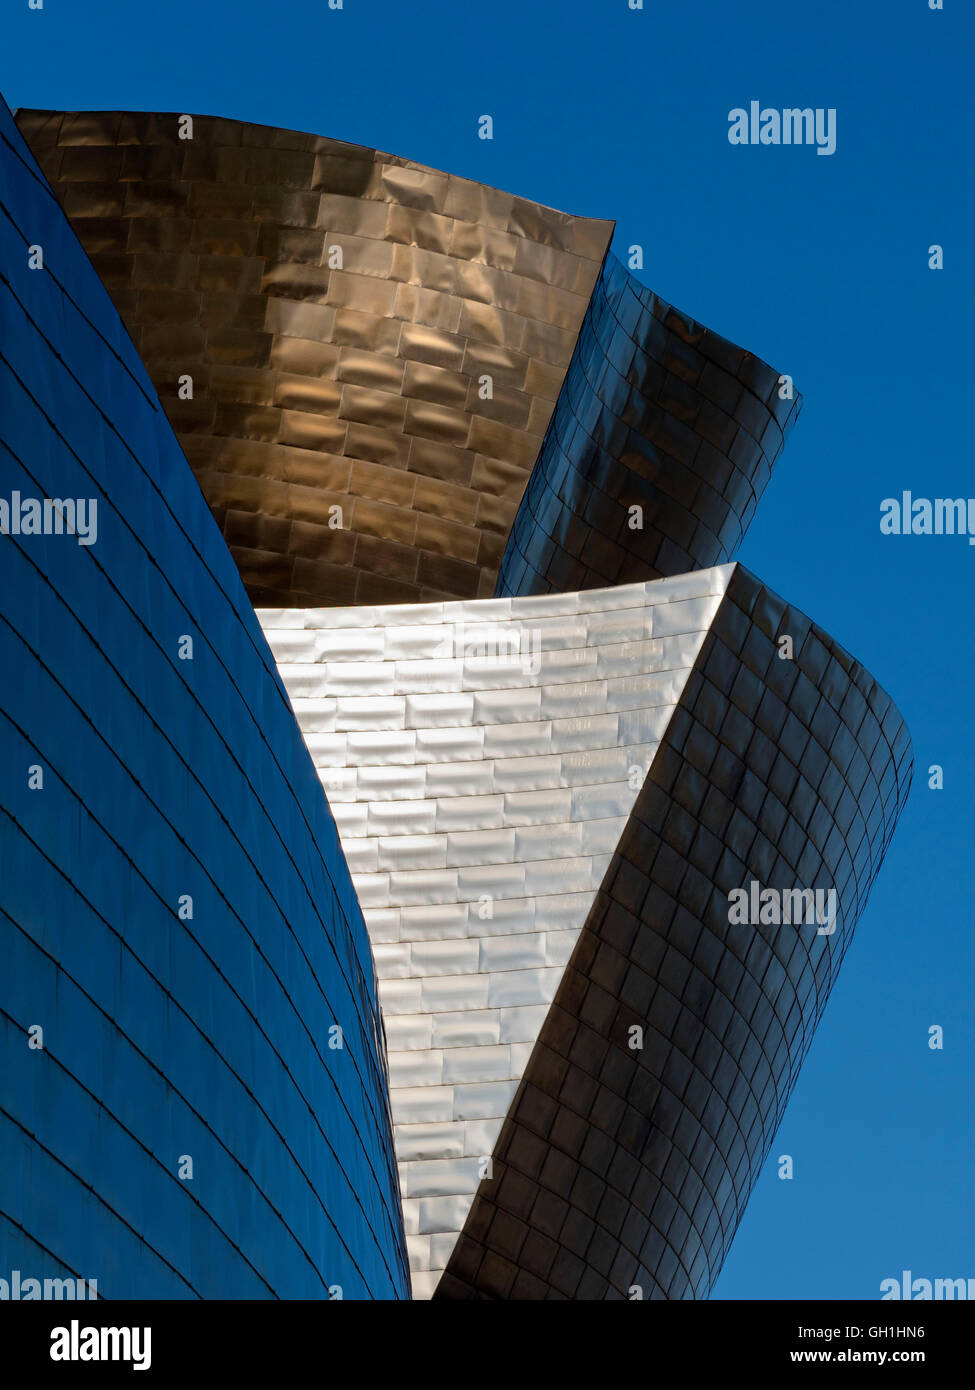 The iconic Guggenheim Museum in Bilbao, Spain 4 Stock Photo